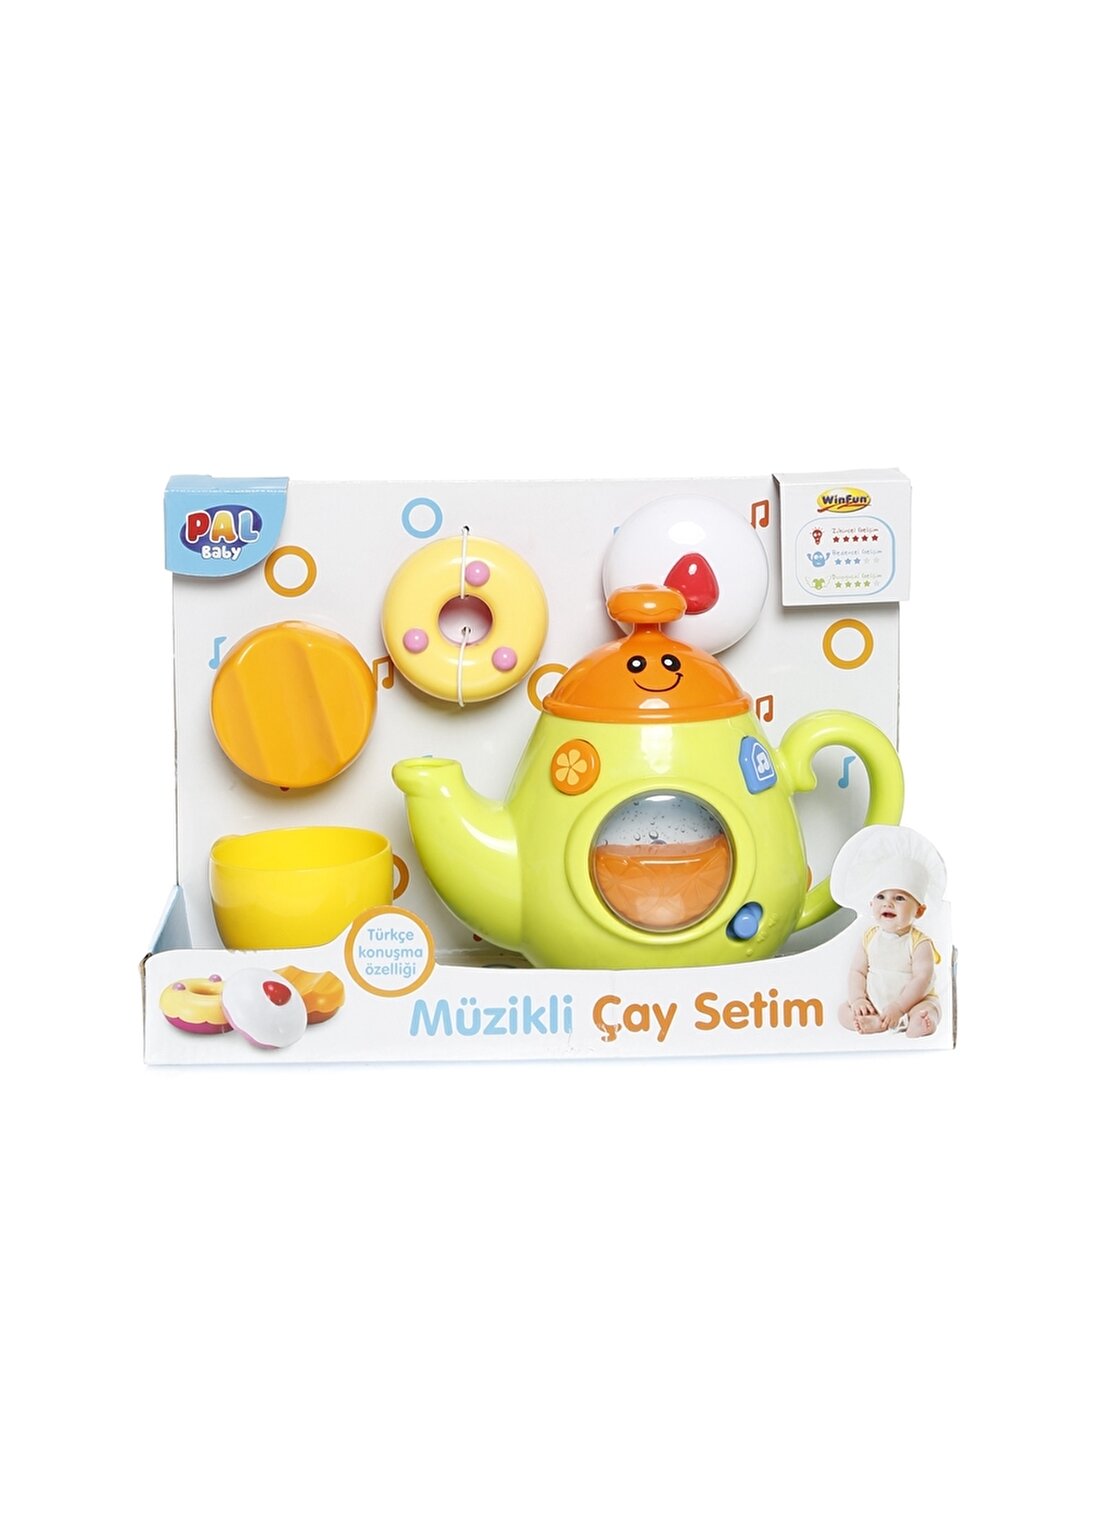 Winfun Müzikli Çay Setim Mutfak Oyuncak Araç